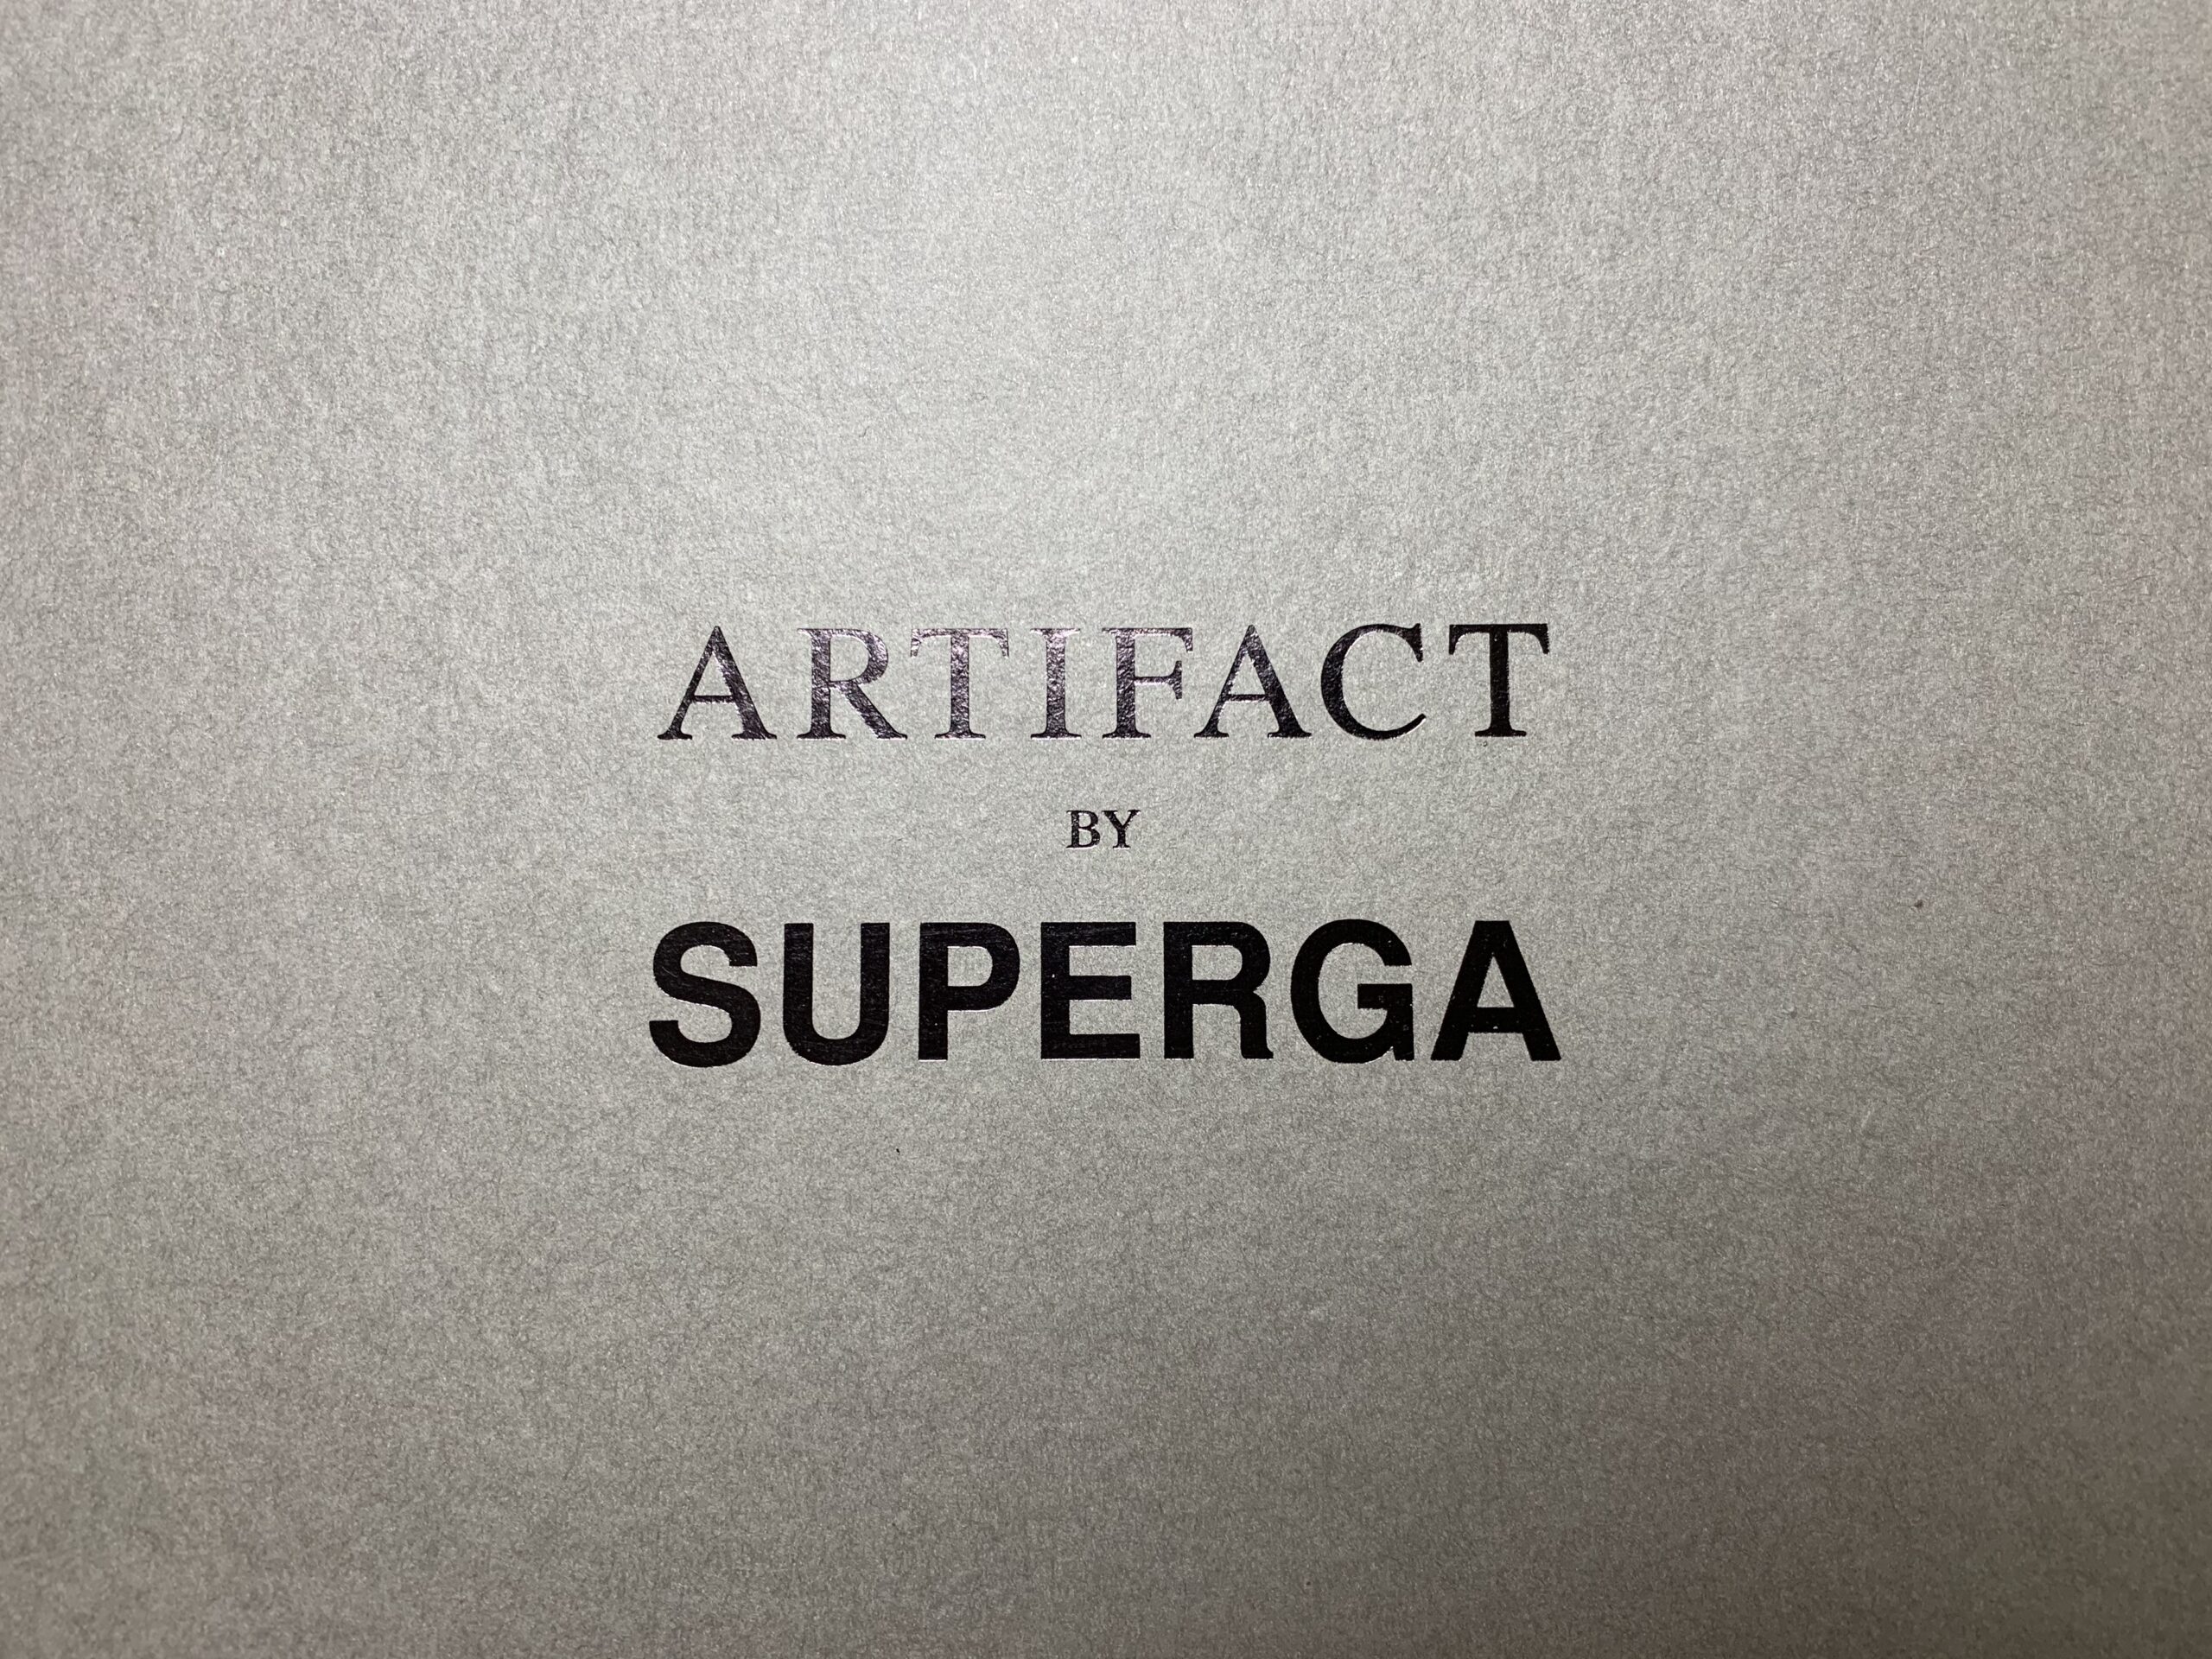 artifact by superga